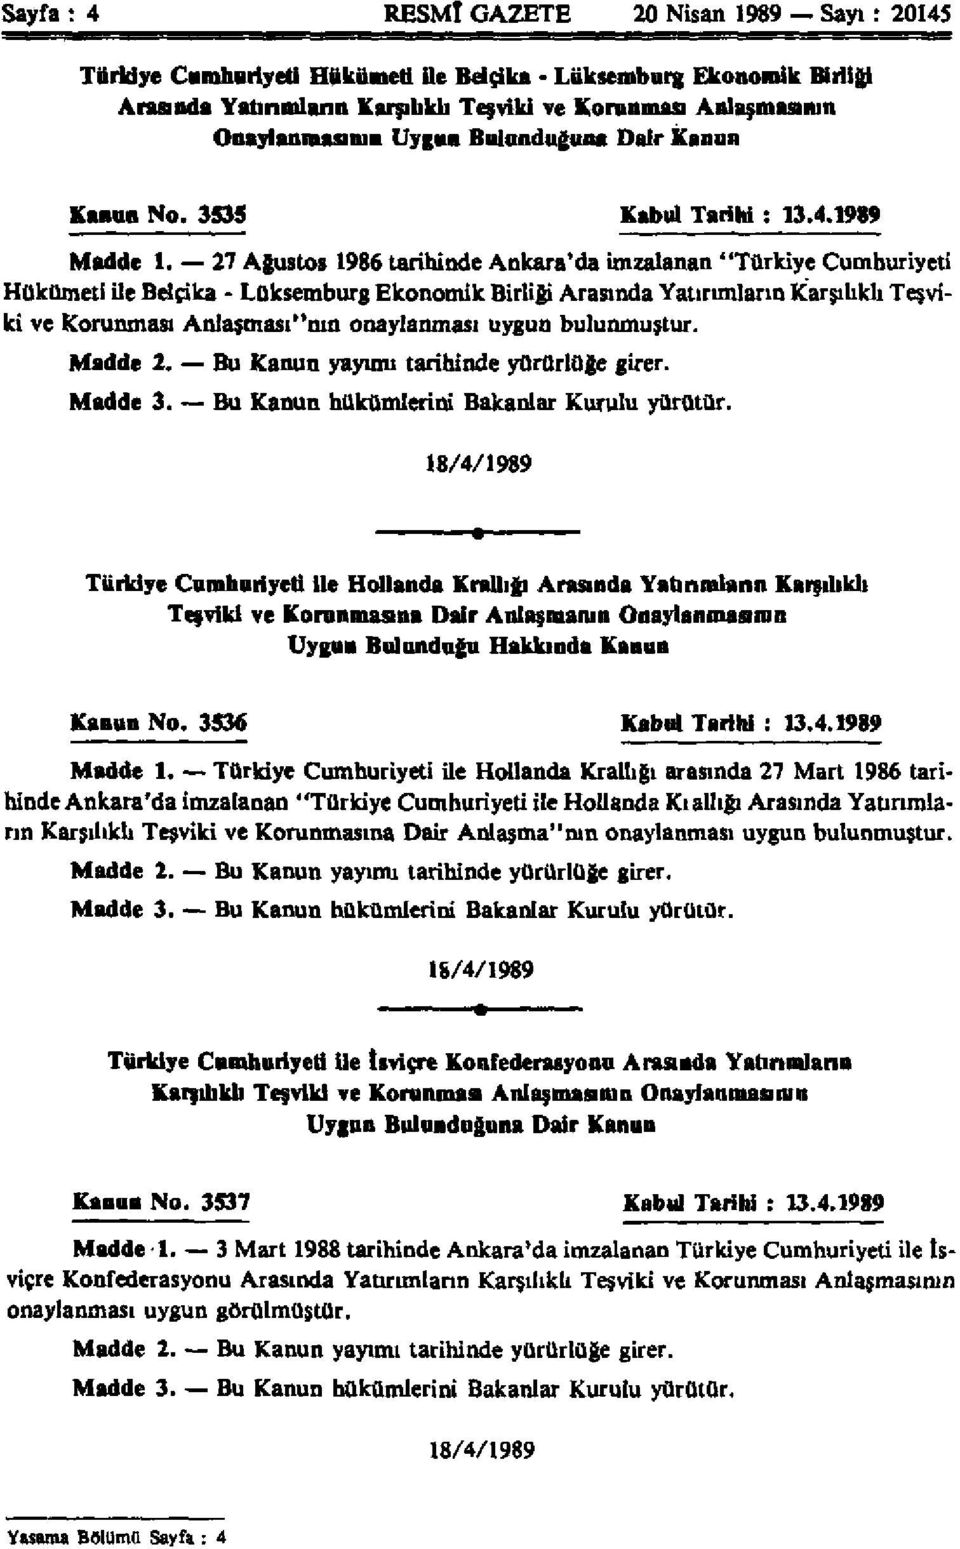 27 Ağustos 1986 tarihinde Ankara'da imzalanan "Türkiye Cumhuriyeti Hükümeti ile Belçika - Lüksemburg Ekonomik Birliği Arasında Yatırımların Karşılıklı Teşviki ve Korunması Anlaşması"nın onaylanması